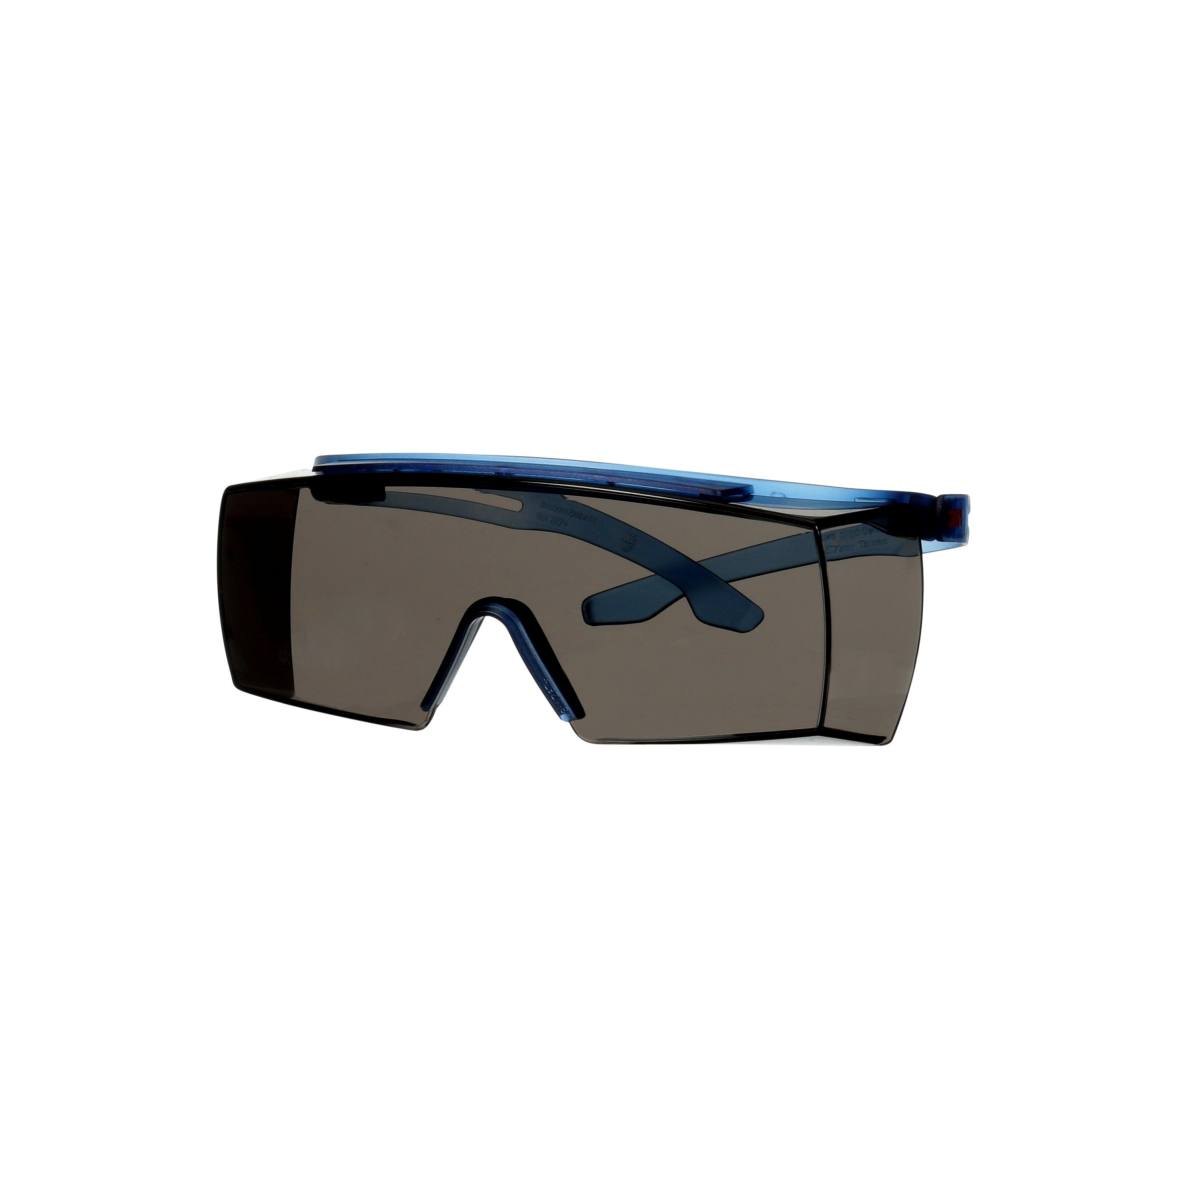 3M SecureFit 3700 Überbrille, blaue Bügel, Scotchgard Anti-Beschlag Beschichtung (K&N), graue Scheibe, winkelverstellbar, SF3702SGAF-BLU-EU